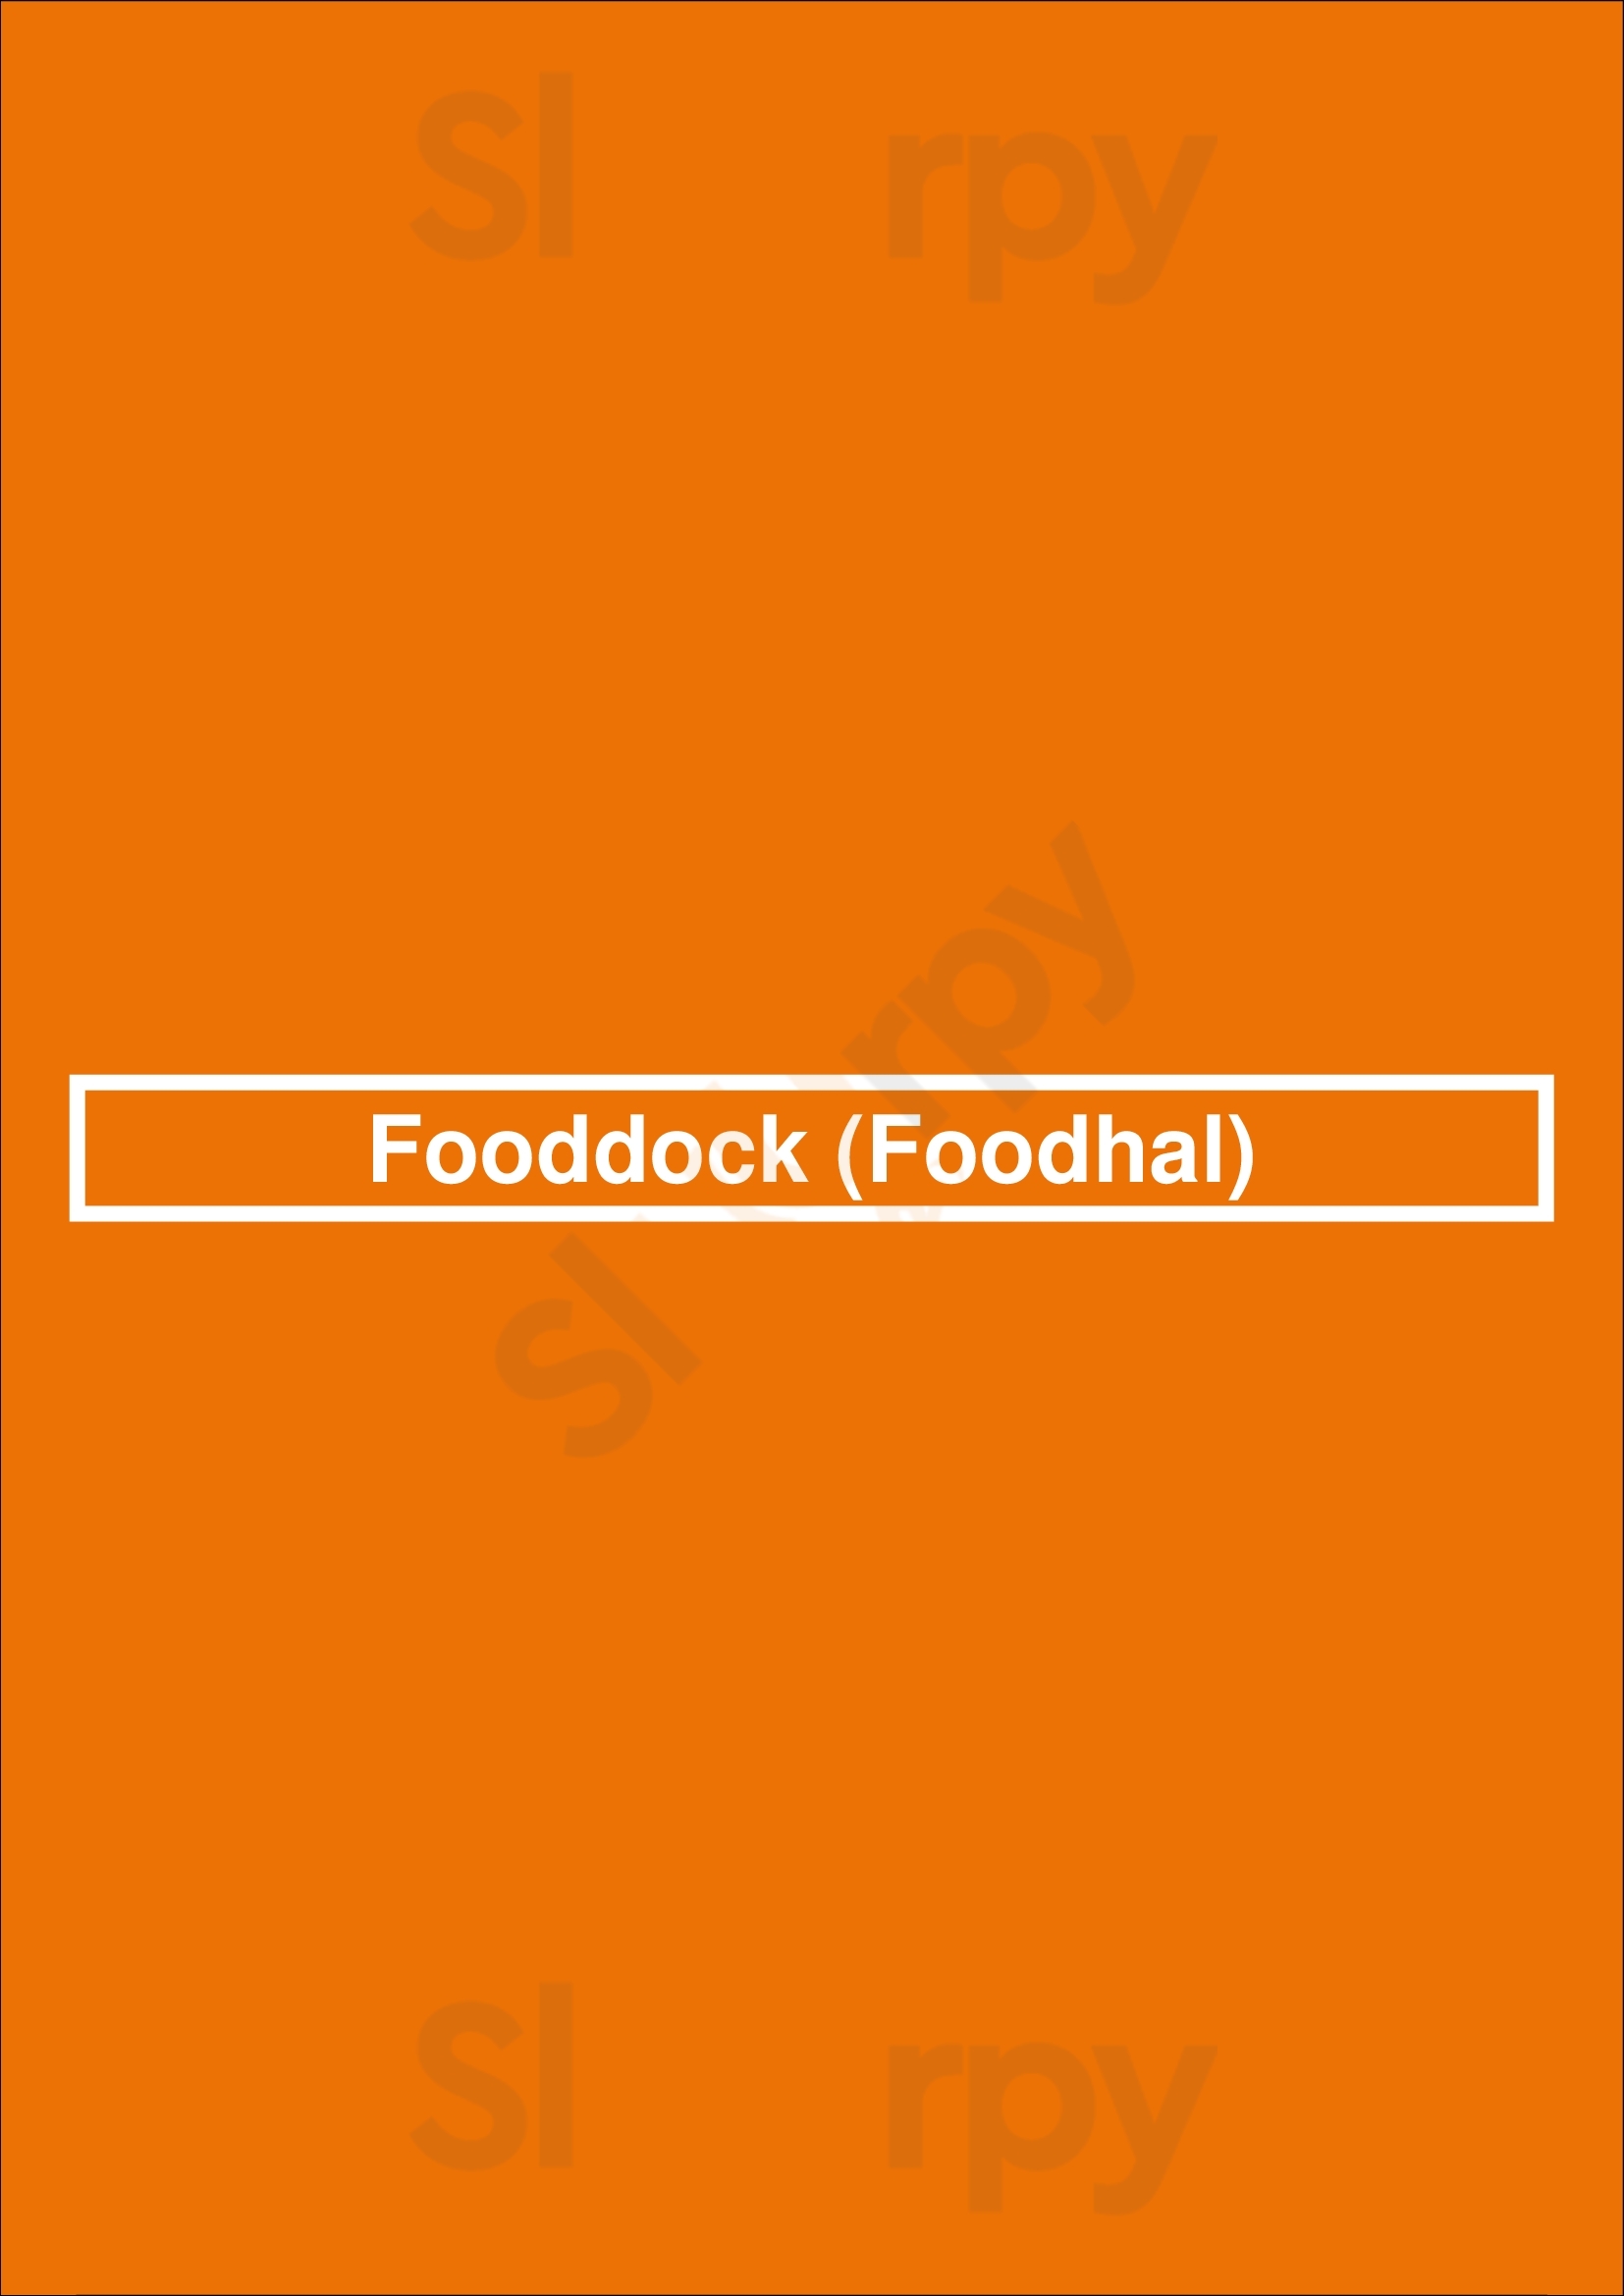 Fooddock (foodhal) Deventer Menu - 1